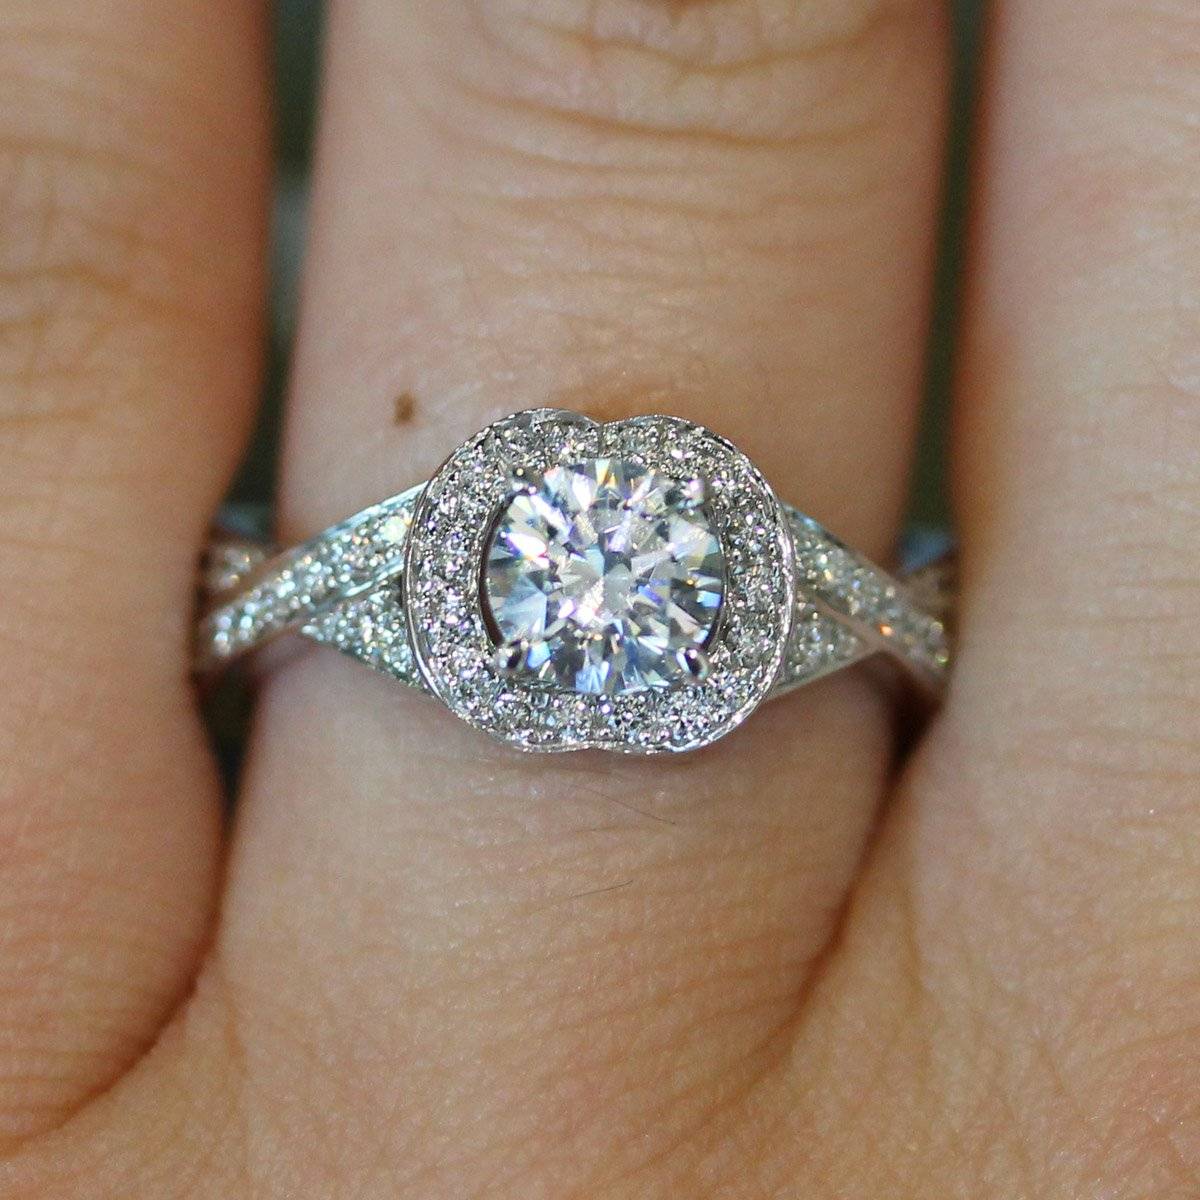 A Jaffe Gorgeous unique halo engagement ring